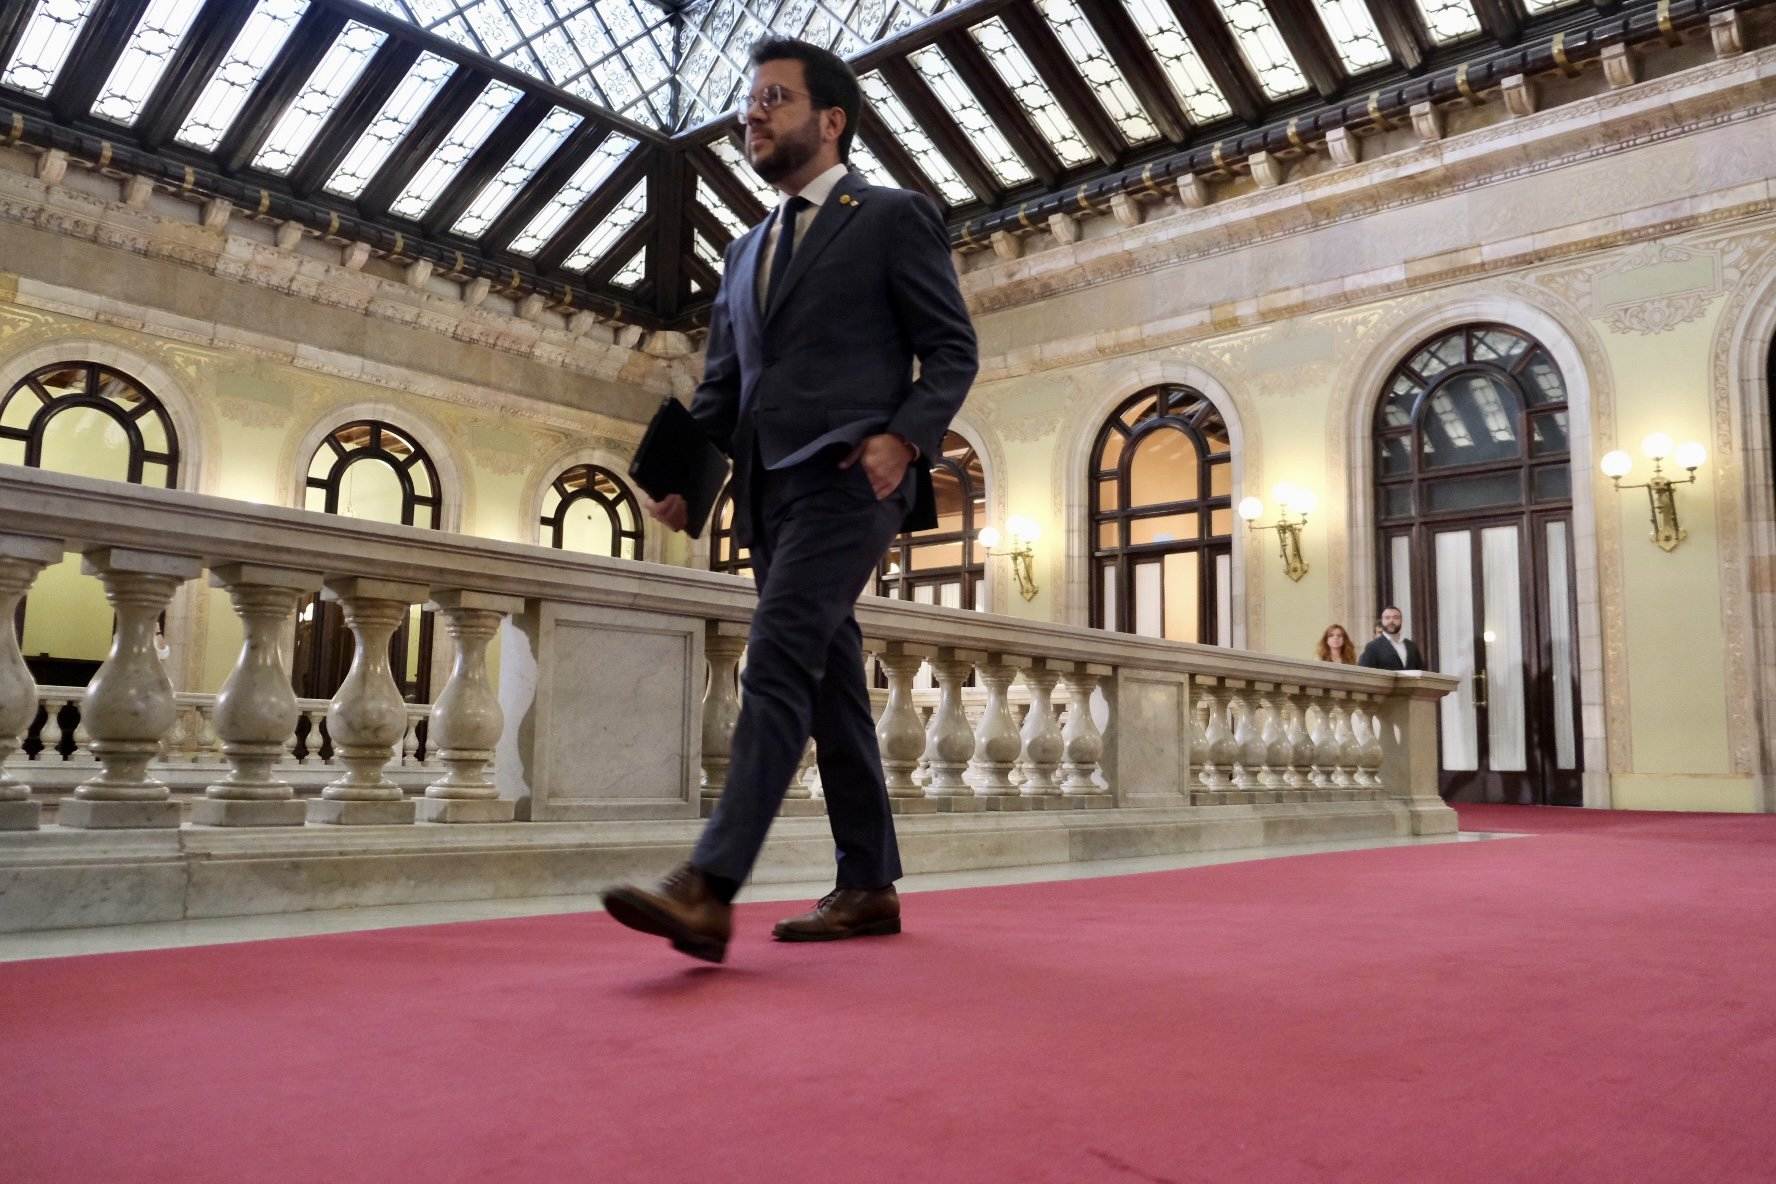 El Parlament castiga a Aragonès: constata la "falta de confianza" e "inestabilidad" del Govern